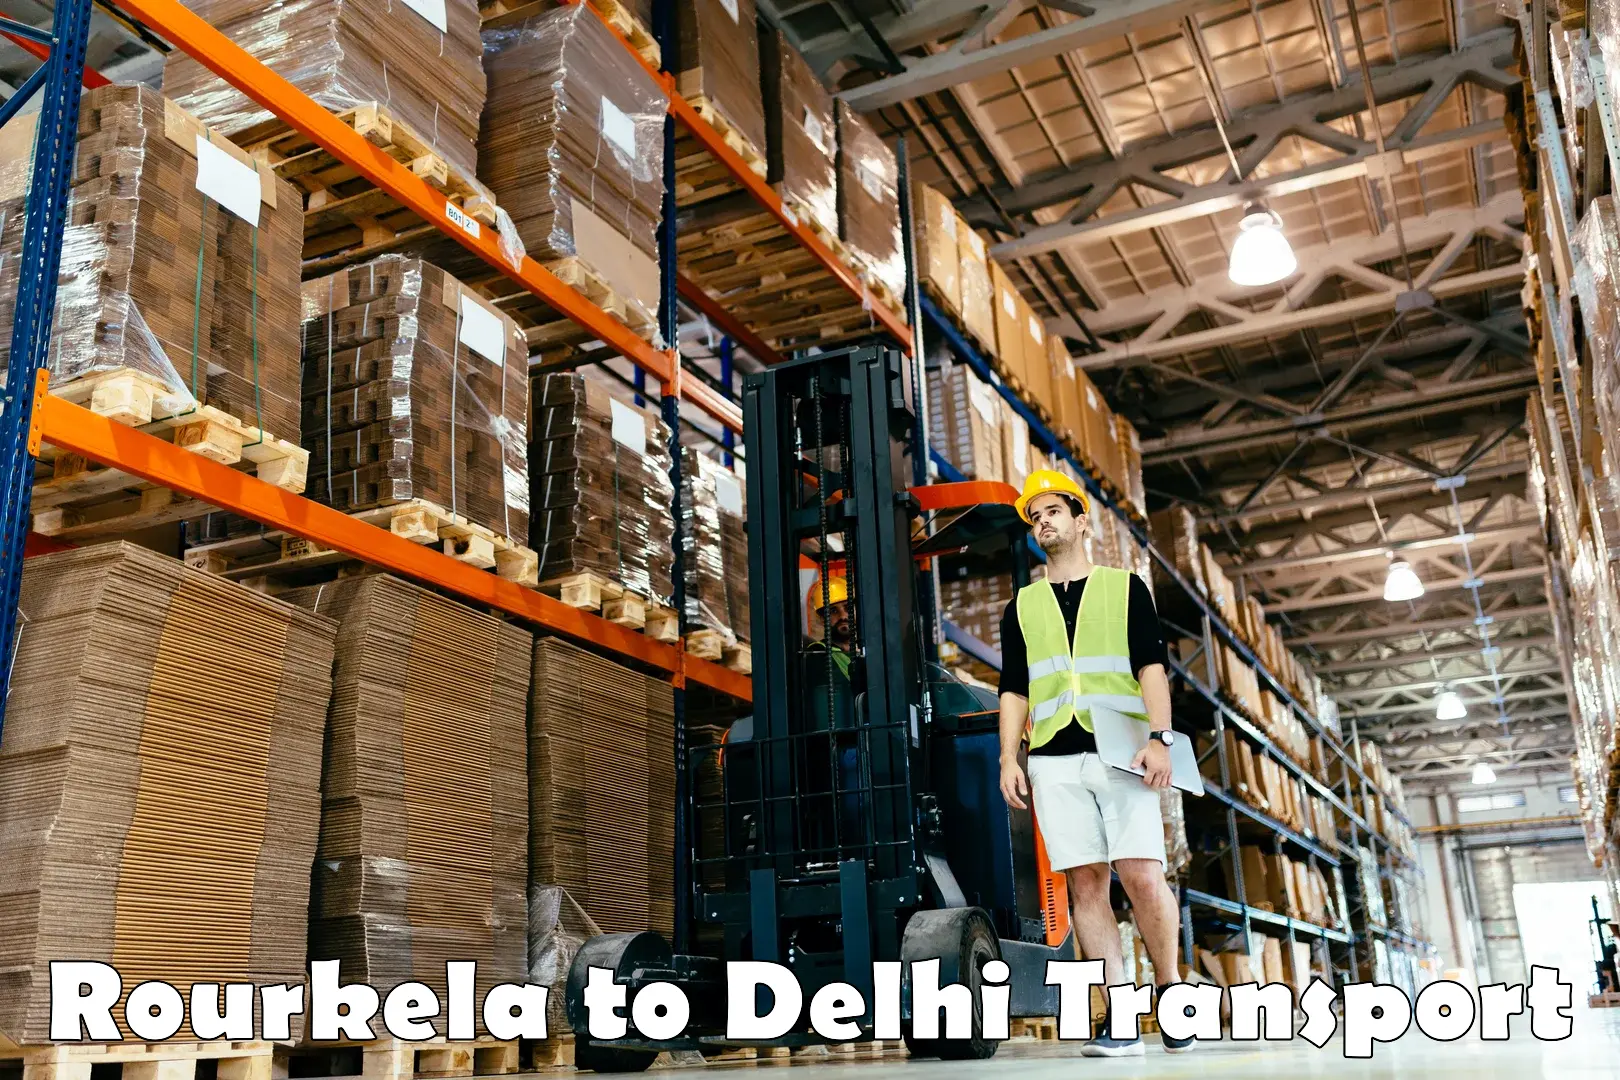 Bike shipping service Rourkela to Delhi